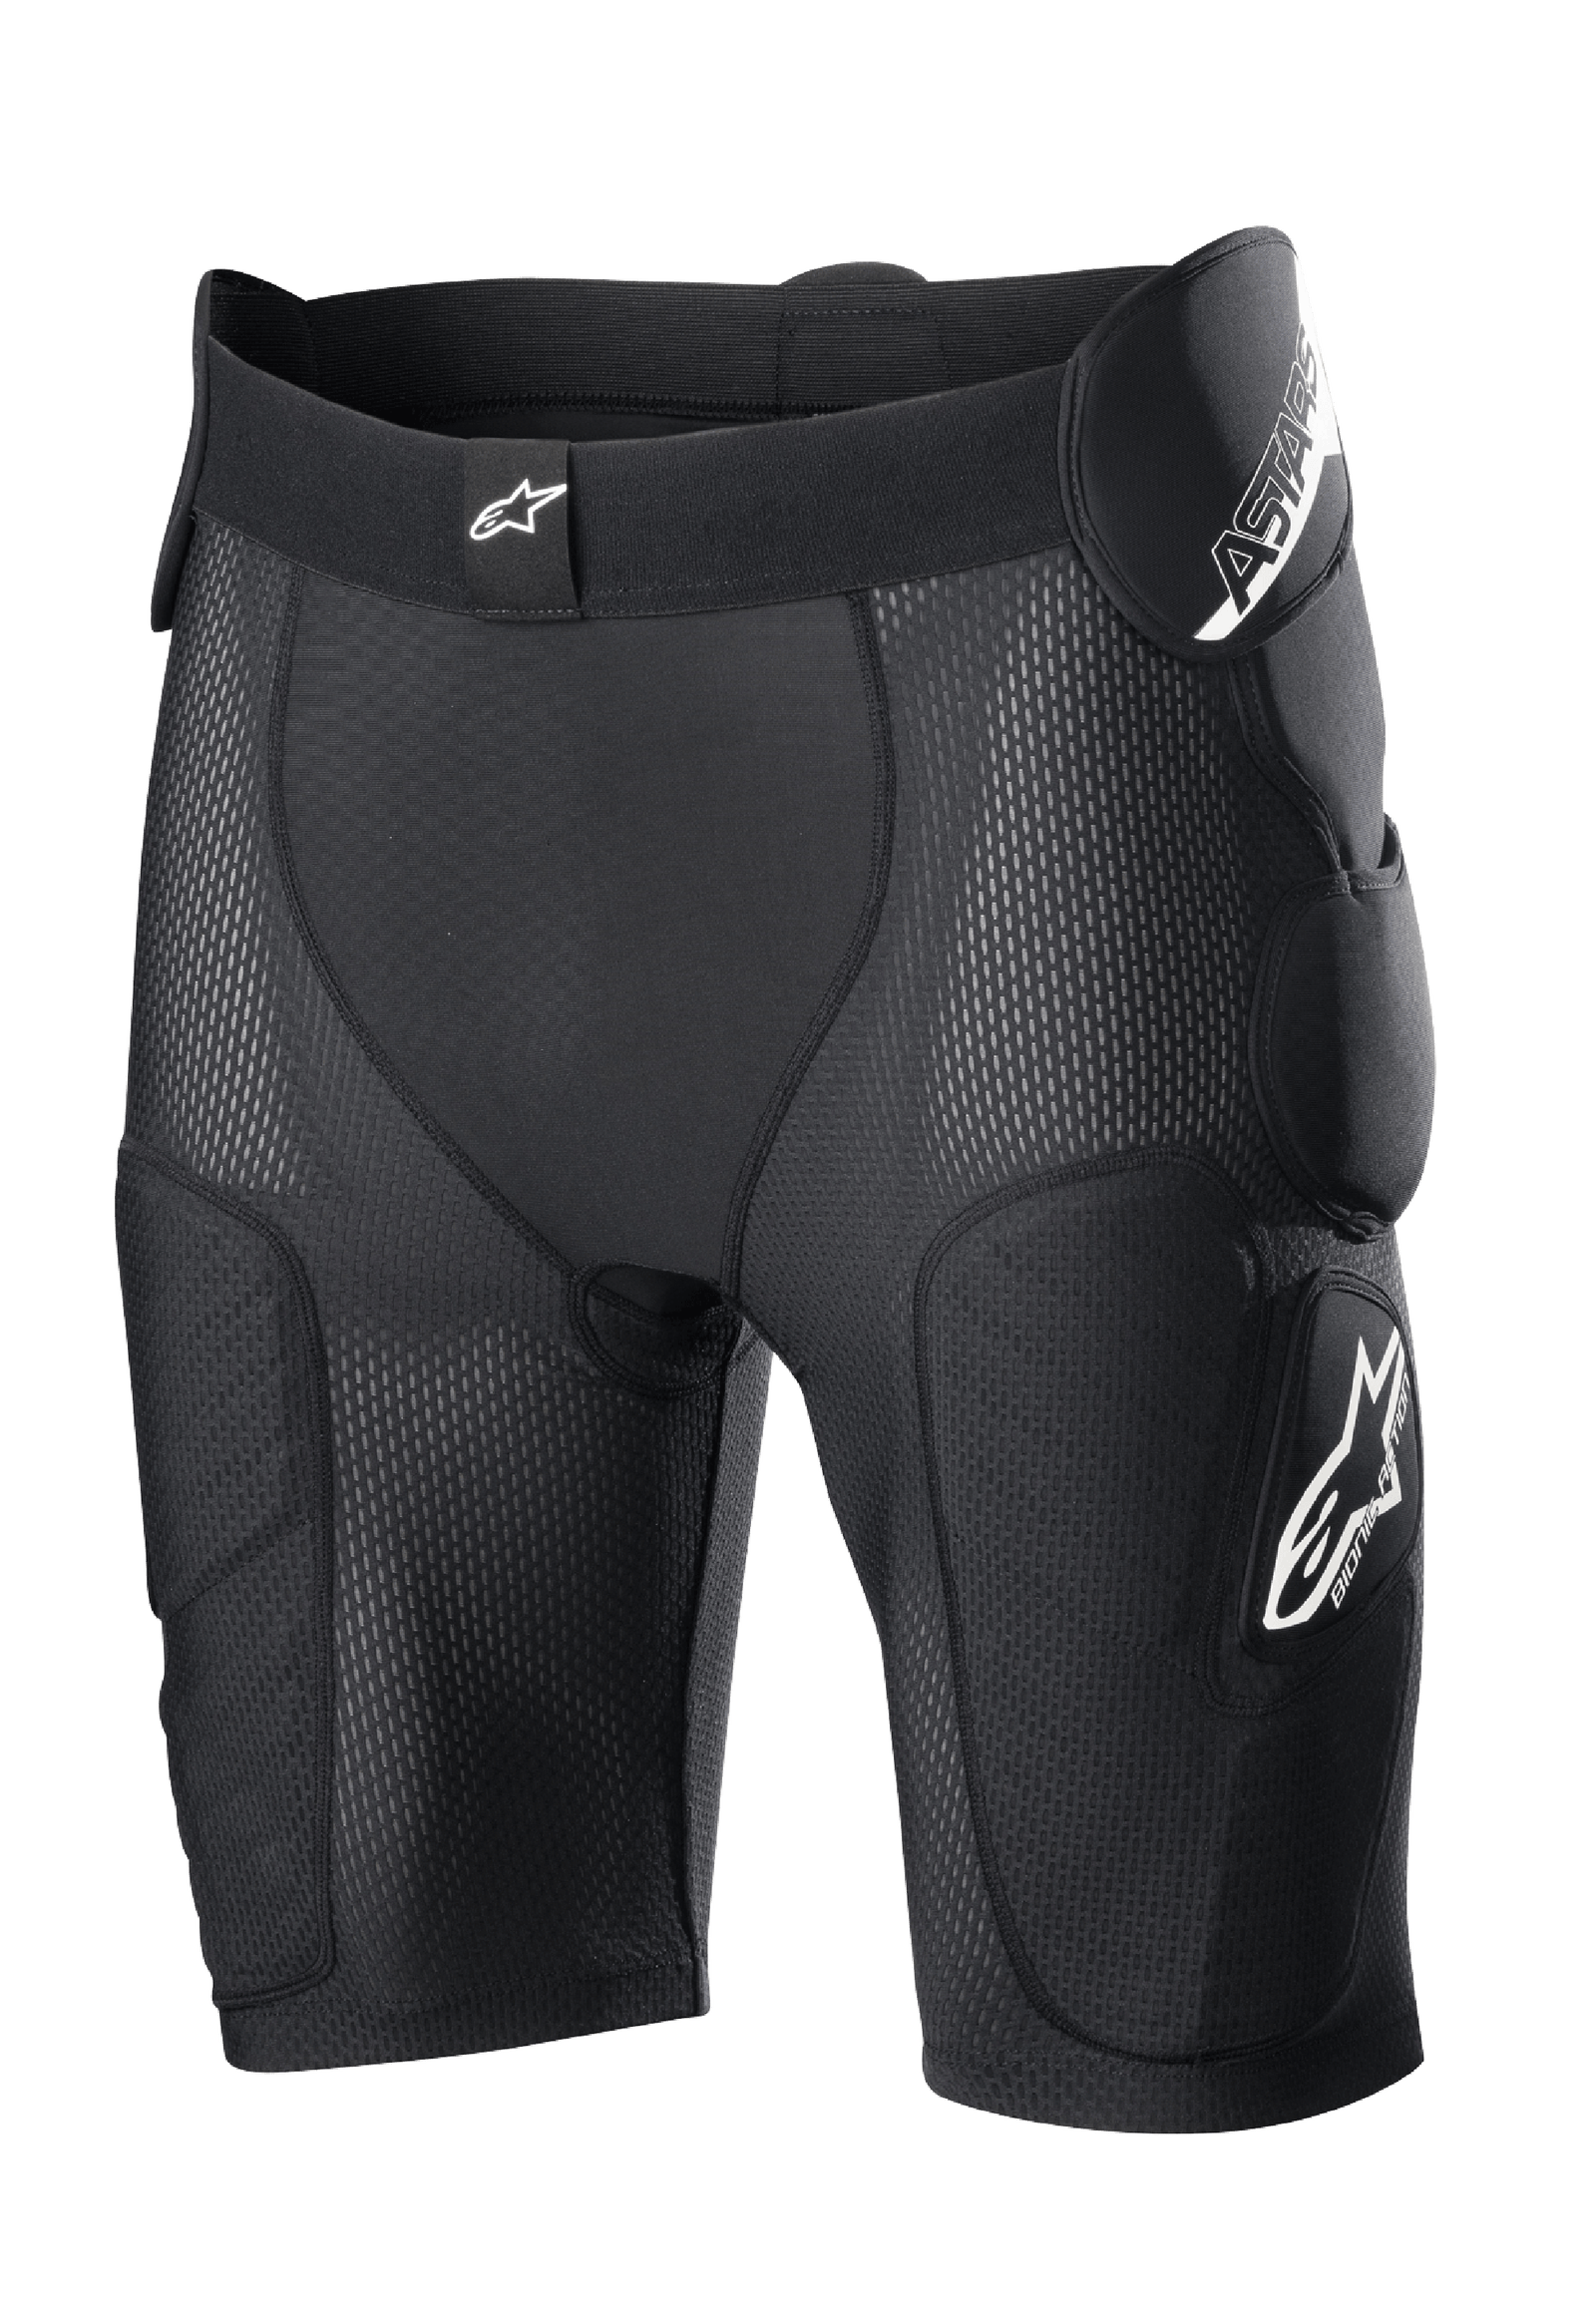 Bionic Action Protectores Pantalones cortos